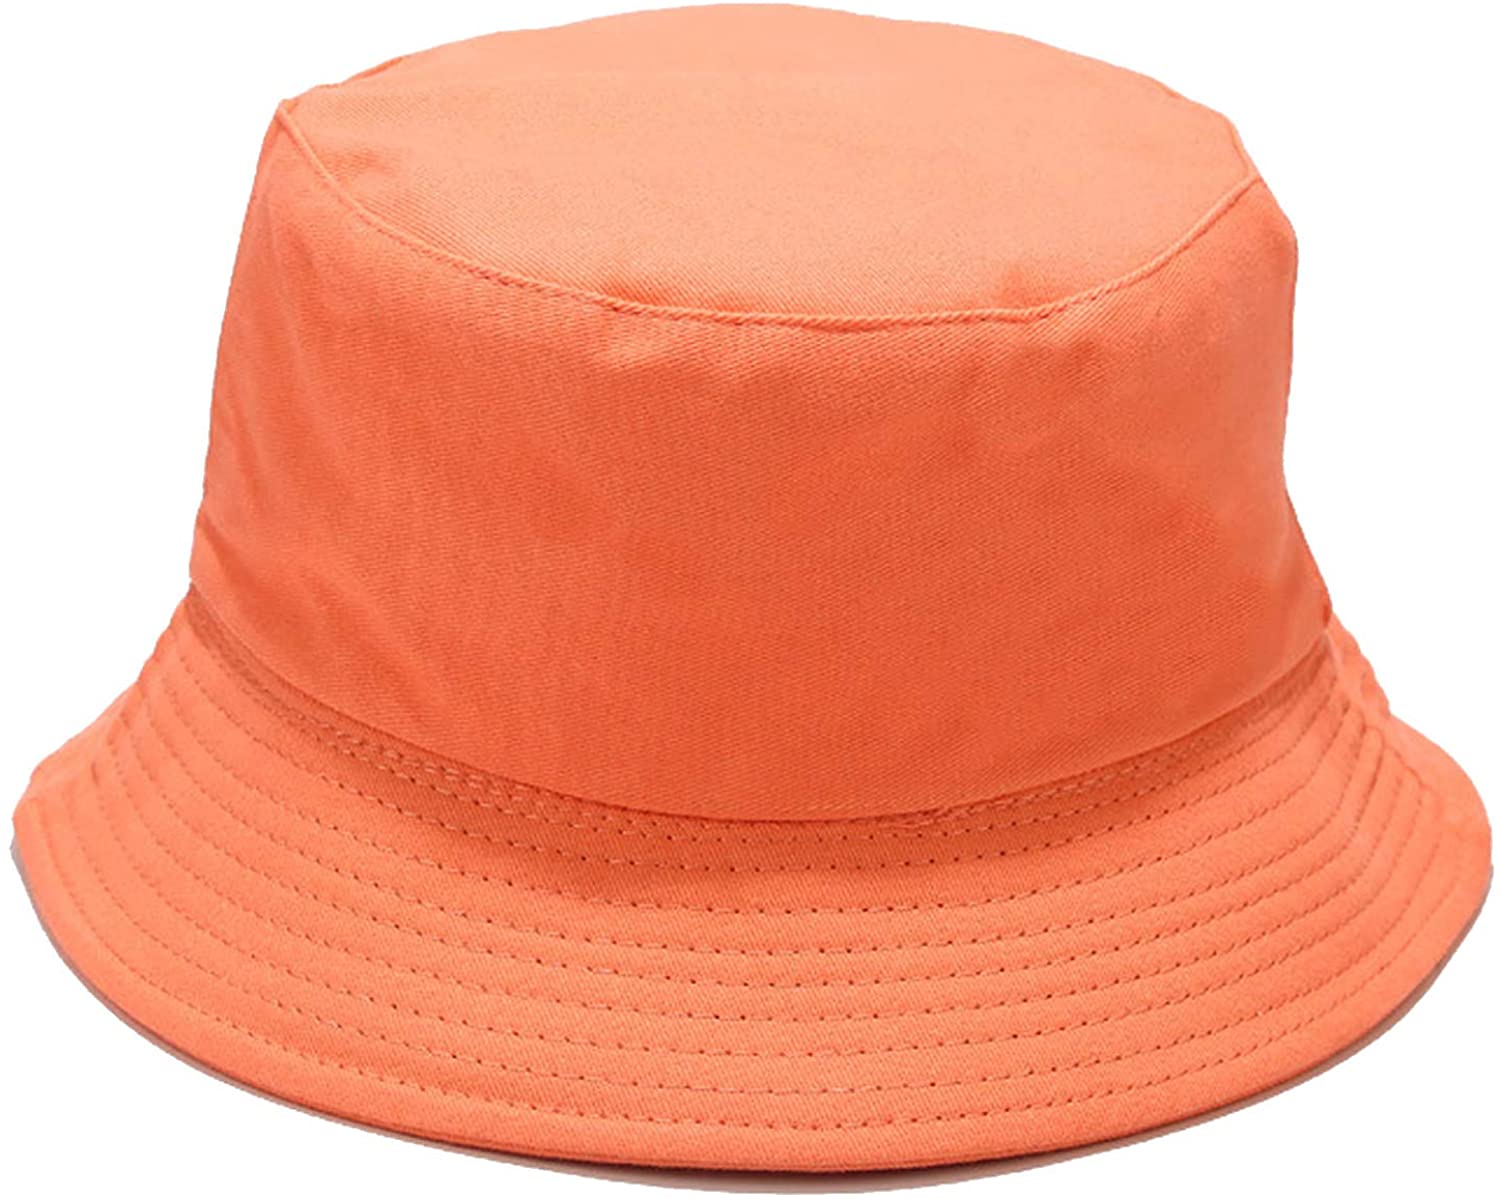 Xingzou Unisex Print Double Side Wear Reversible Bucket Hat 